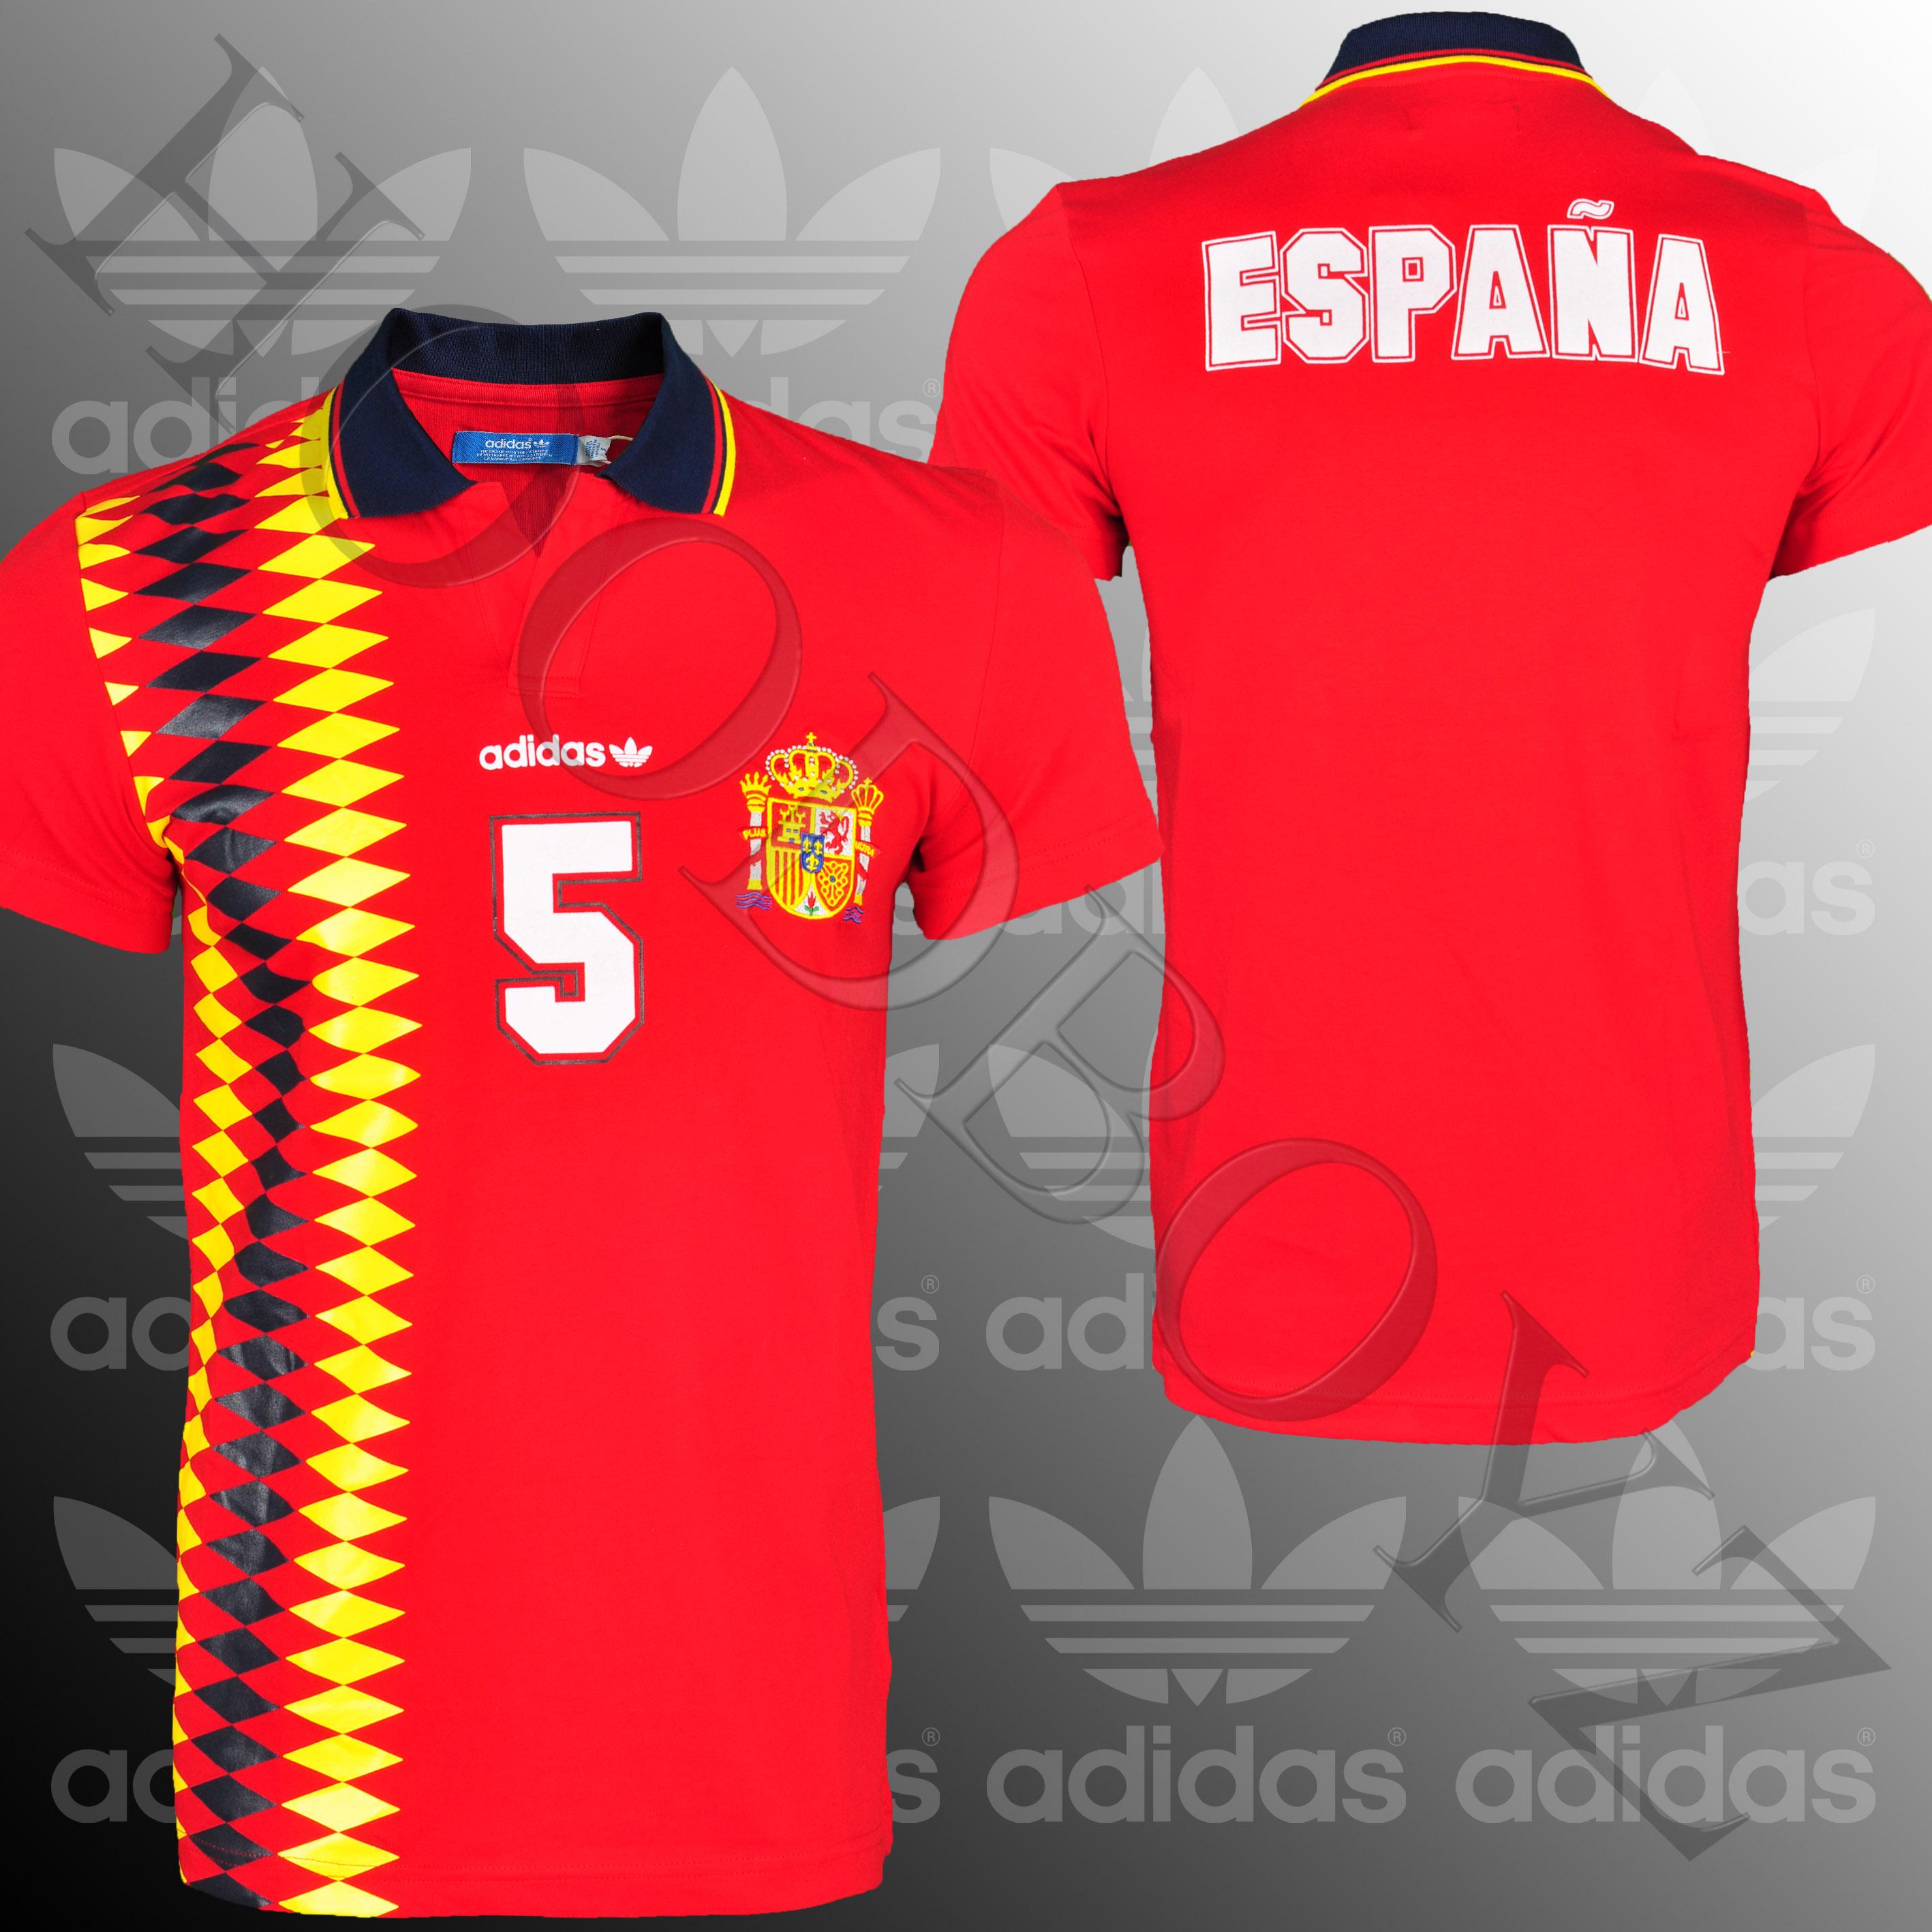 Foto Adidas E 12 Fef Espana Hombres Camiseta Polo Rojo foto 292719